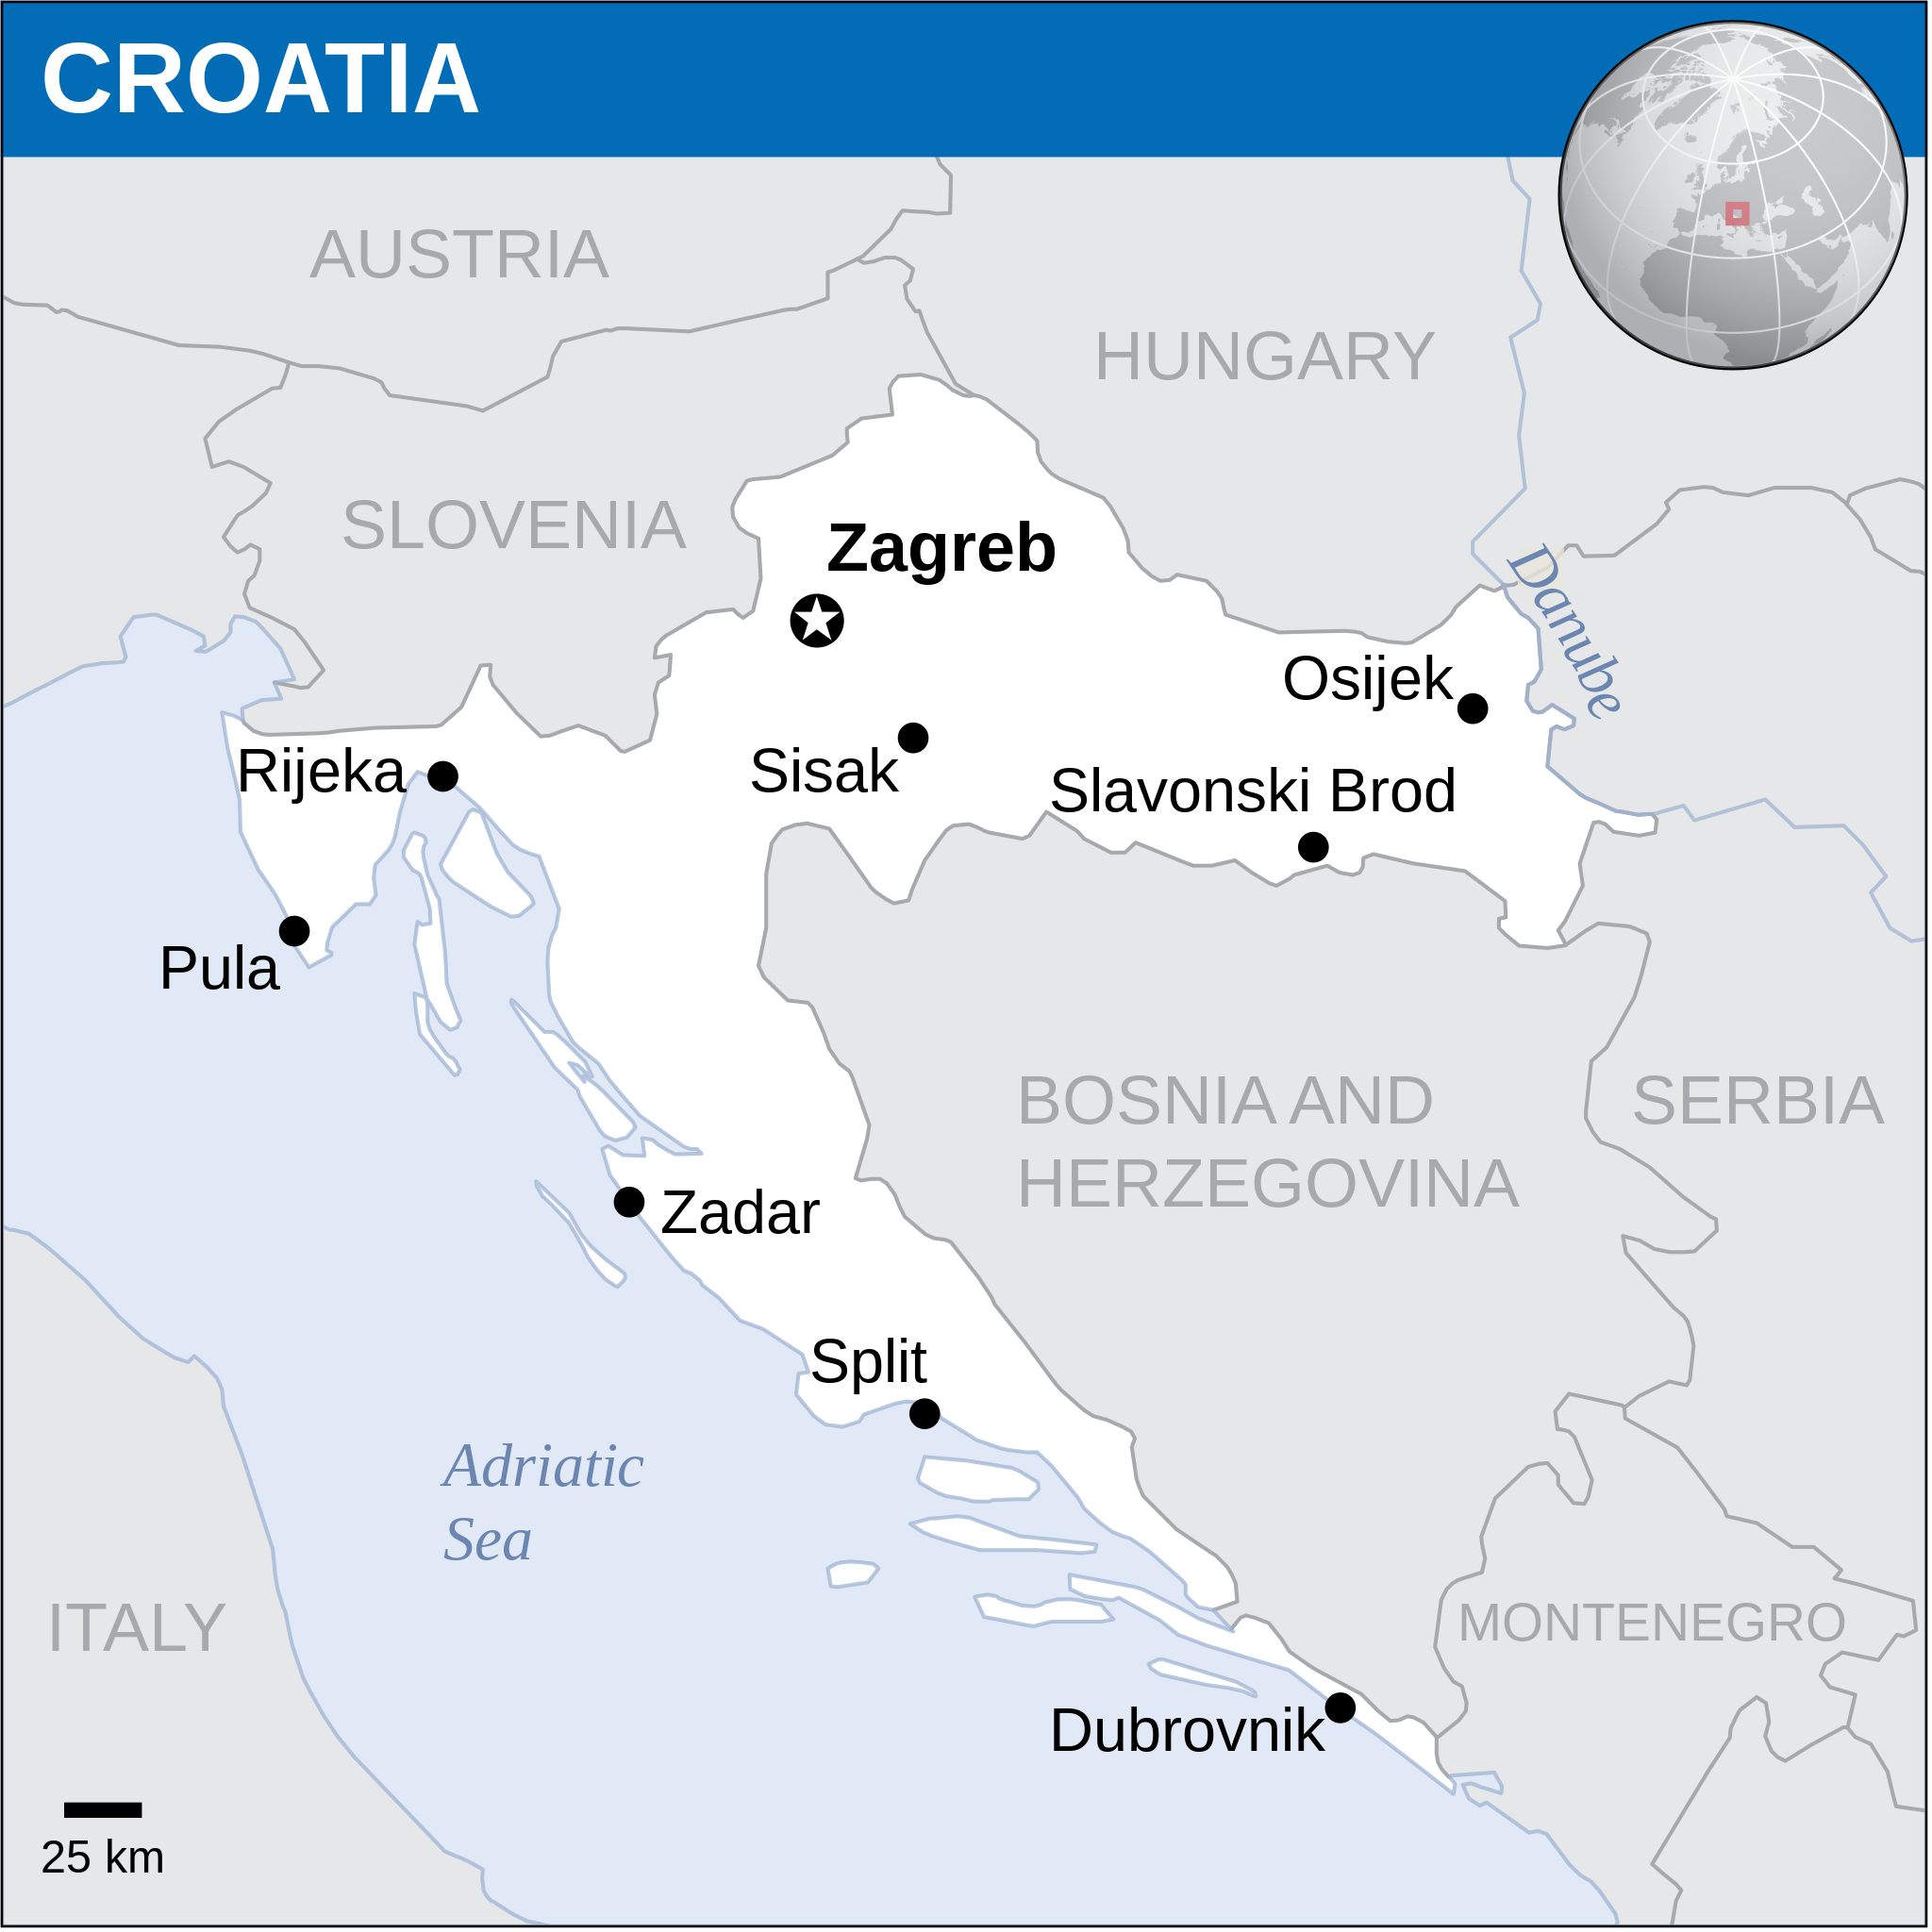 croatian football federation - development curriculum